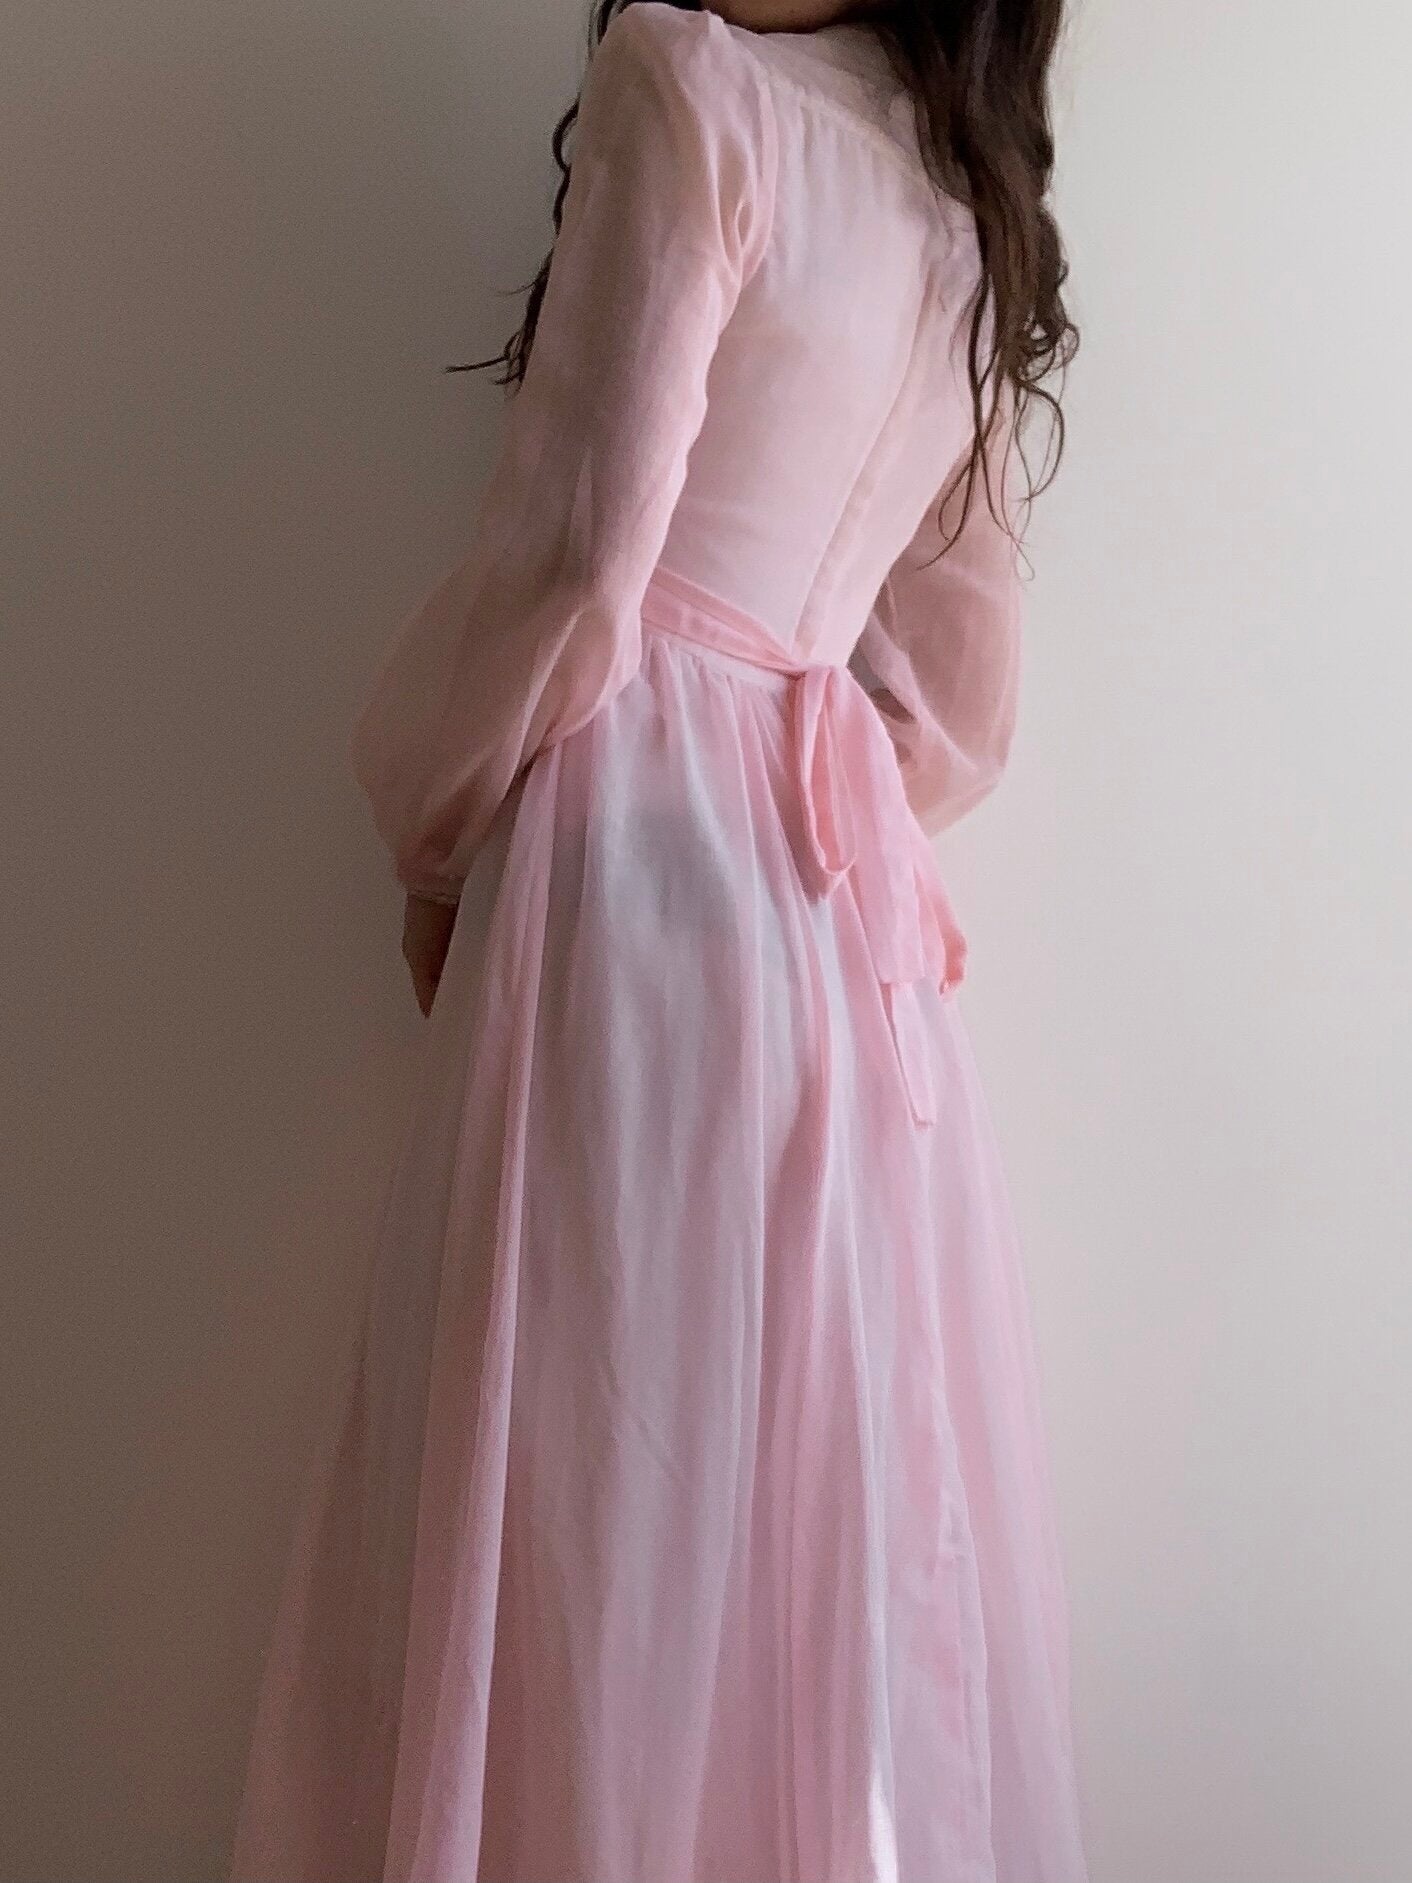 Gunne Sax Pink Princess Dress (XS/S)